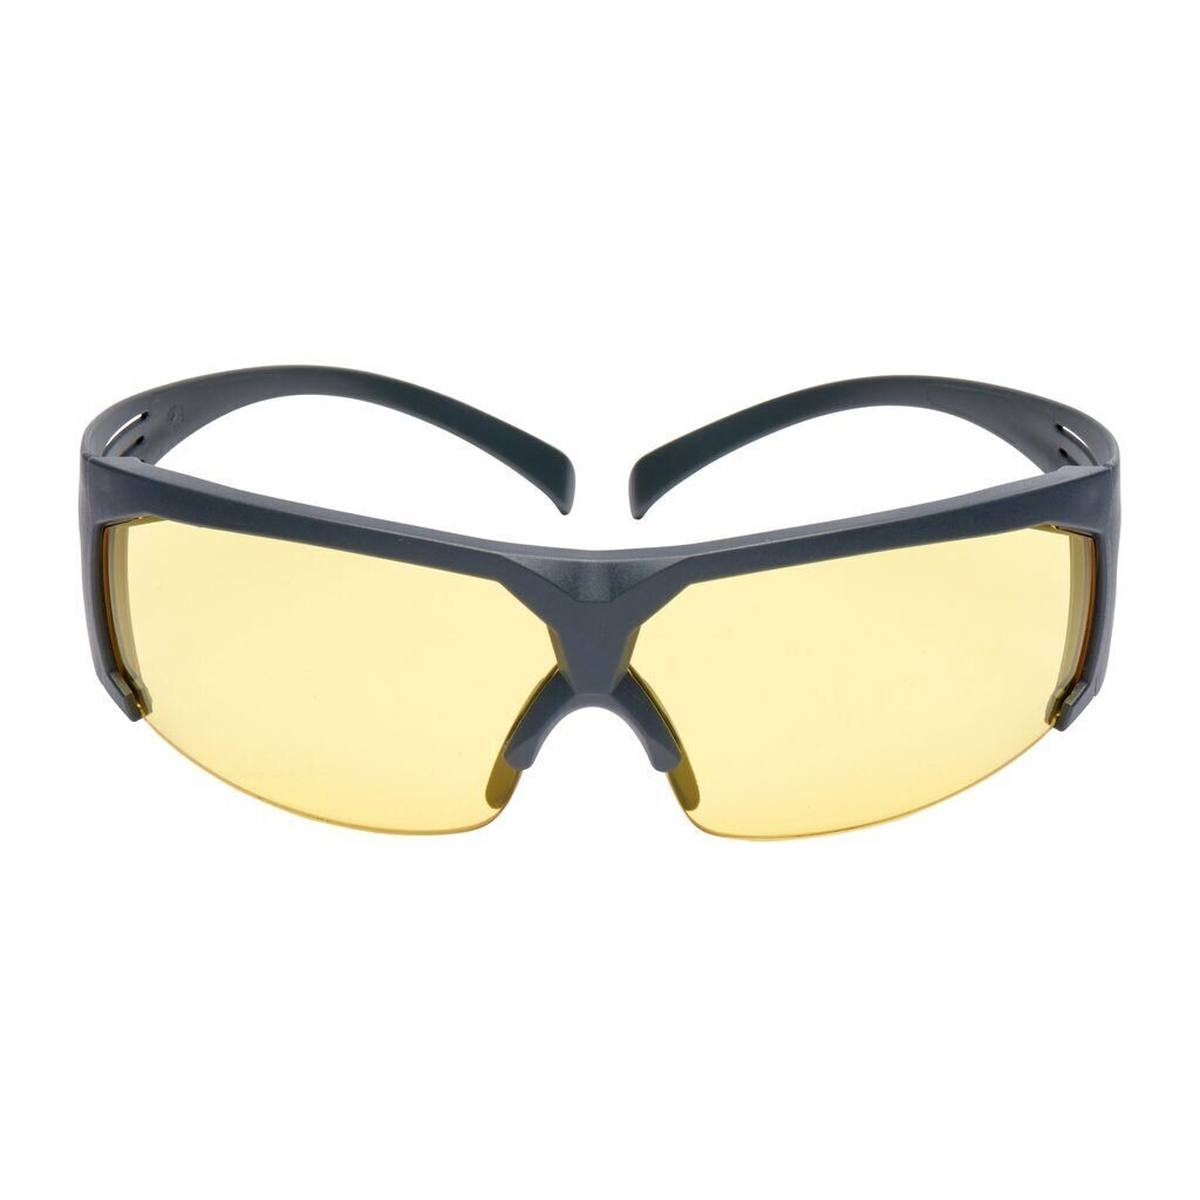 3M Gafas de protección SecureFit 600, patillas grises, tratamiento antivaho/antirayaduras Scotchgard (K&amp;N), lente amarilla, SF603SGAF-EU